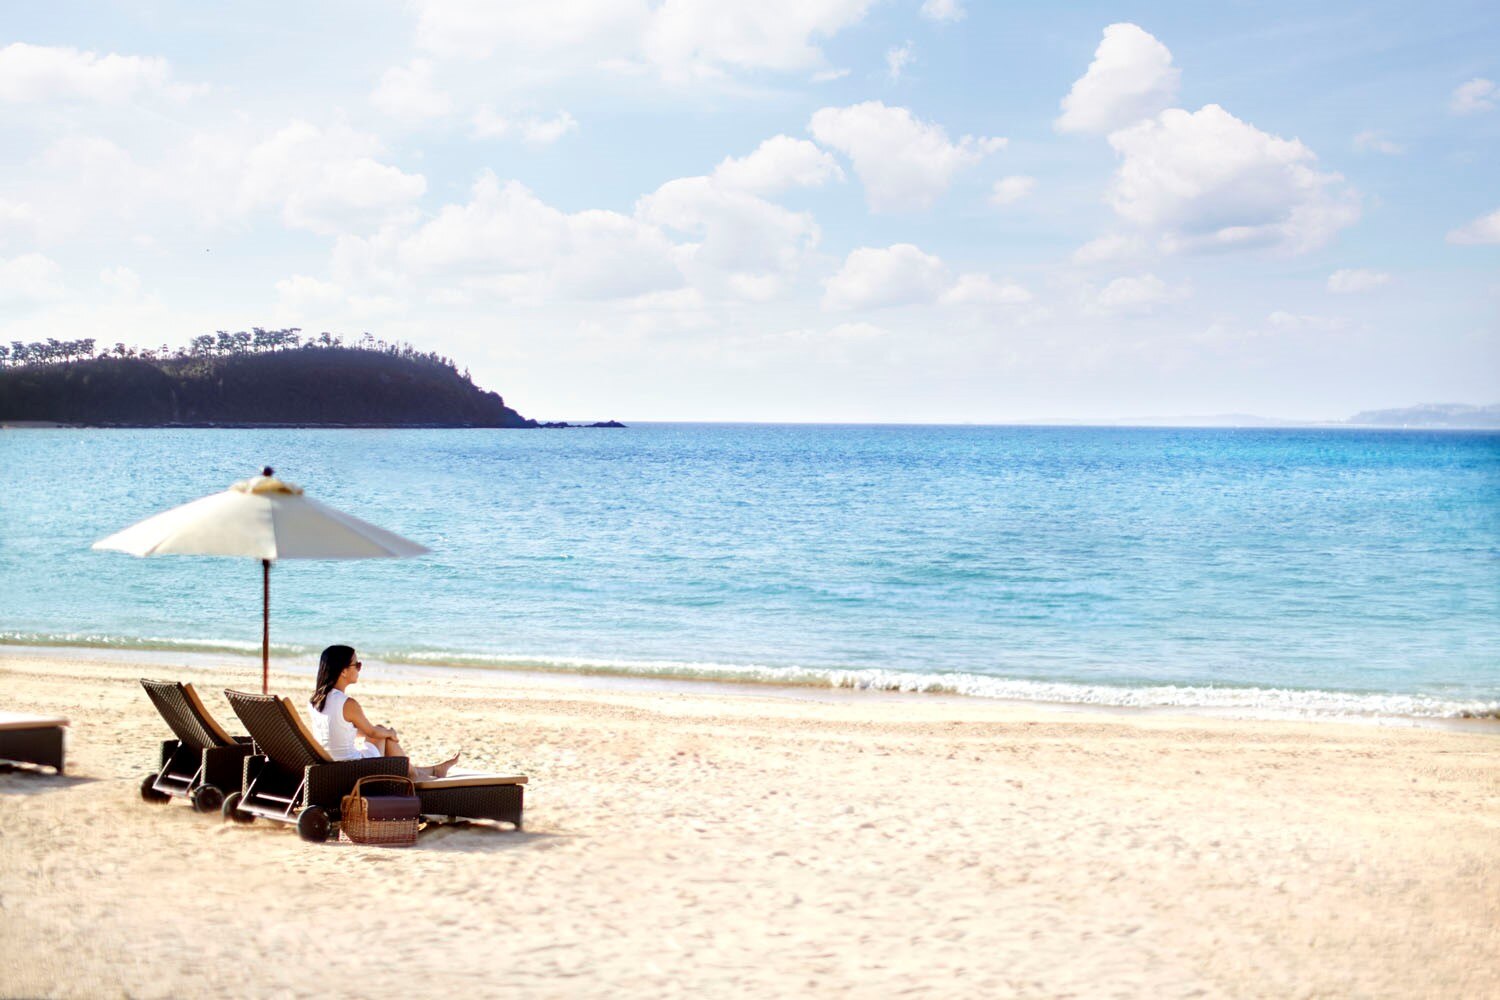 ザ リッツ カールトン沖縄が宿泊客専用プライベートビーチを4月1日にオープン Skyticket 観光ガイド